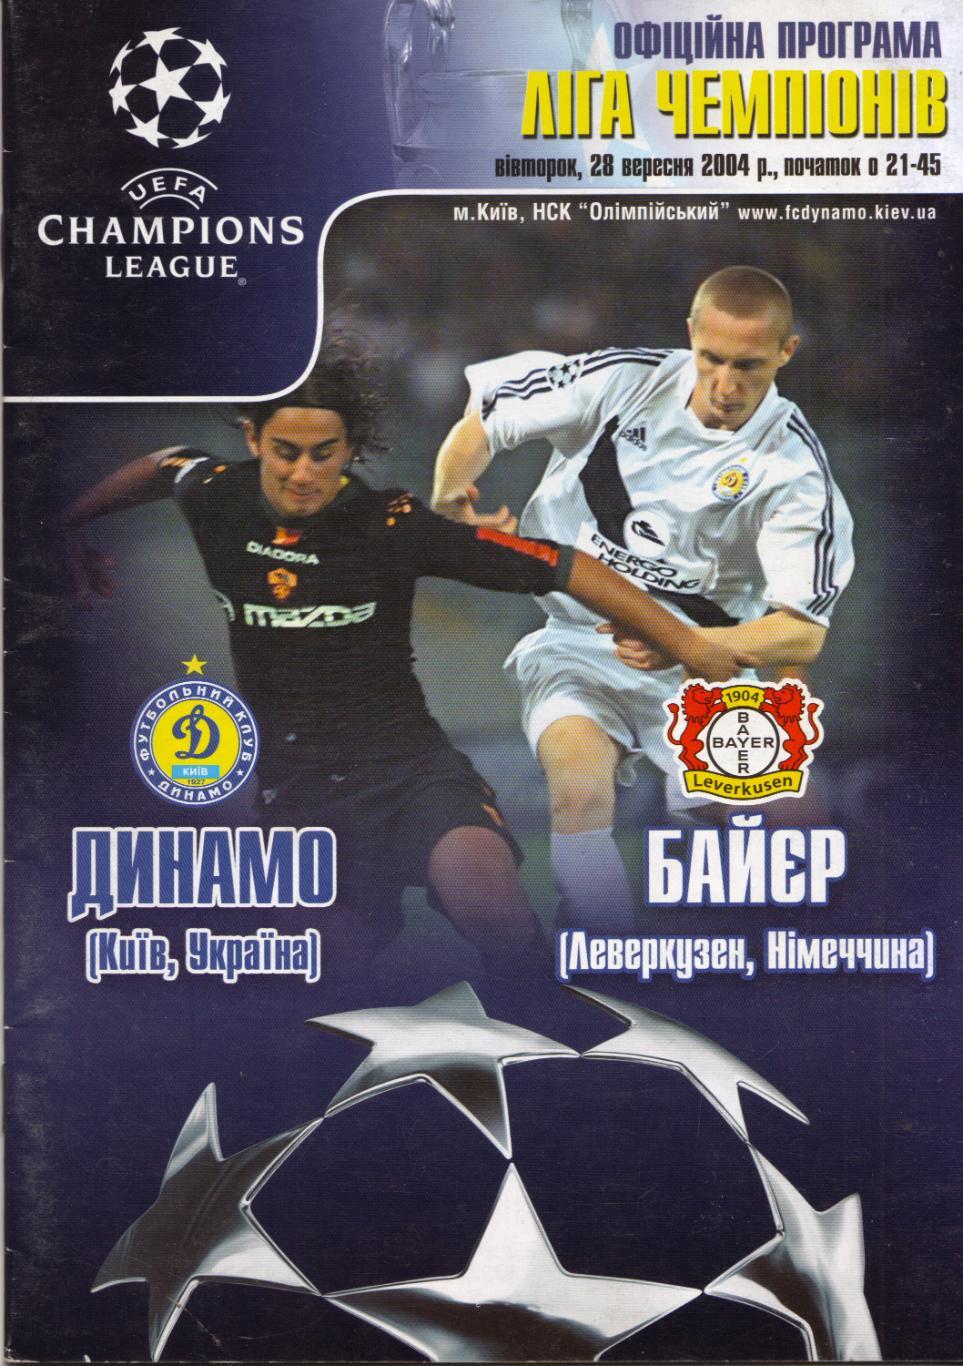 Динамо Киев, Украина - Байер Германия 28.09.2004